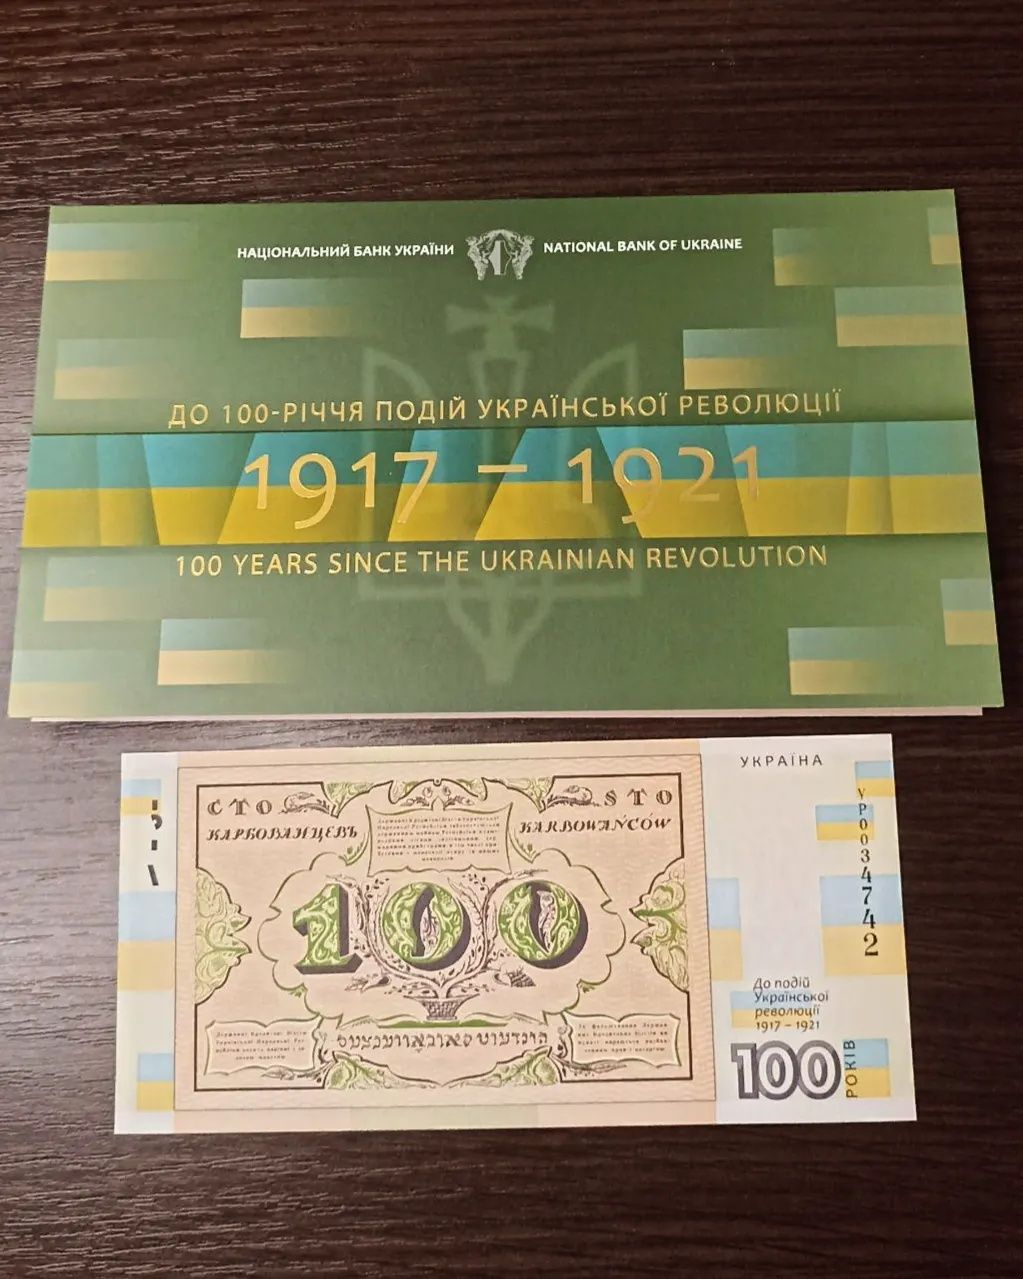 Сувенірна банкнота "Сто гривень" в сувенірній упаковці